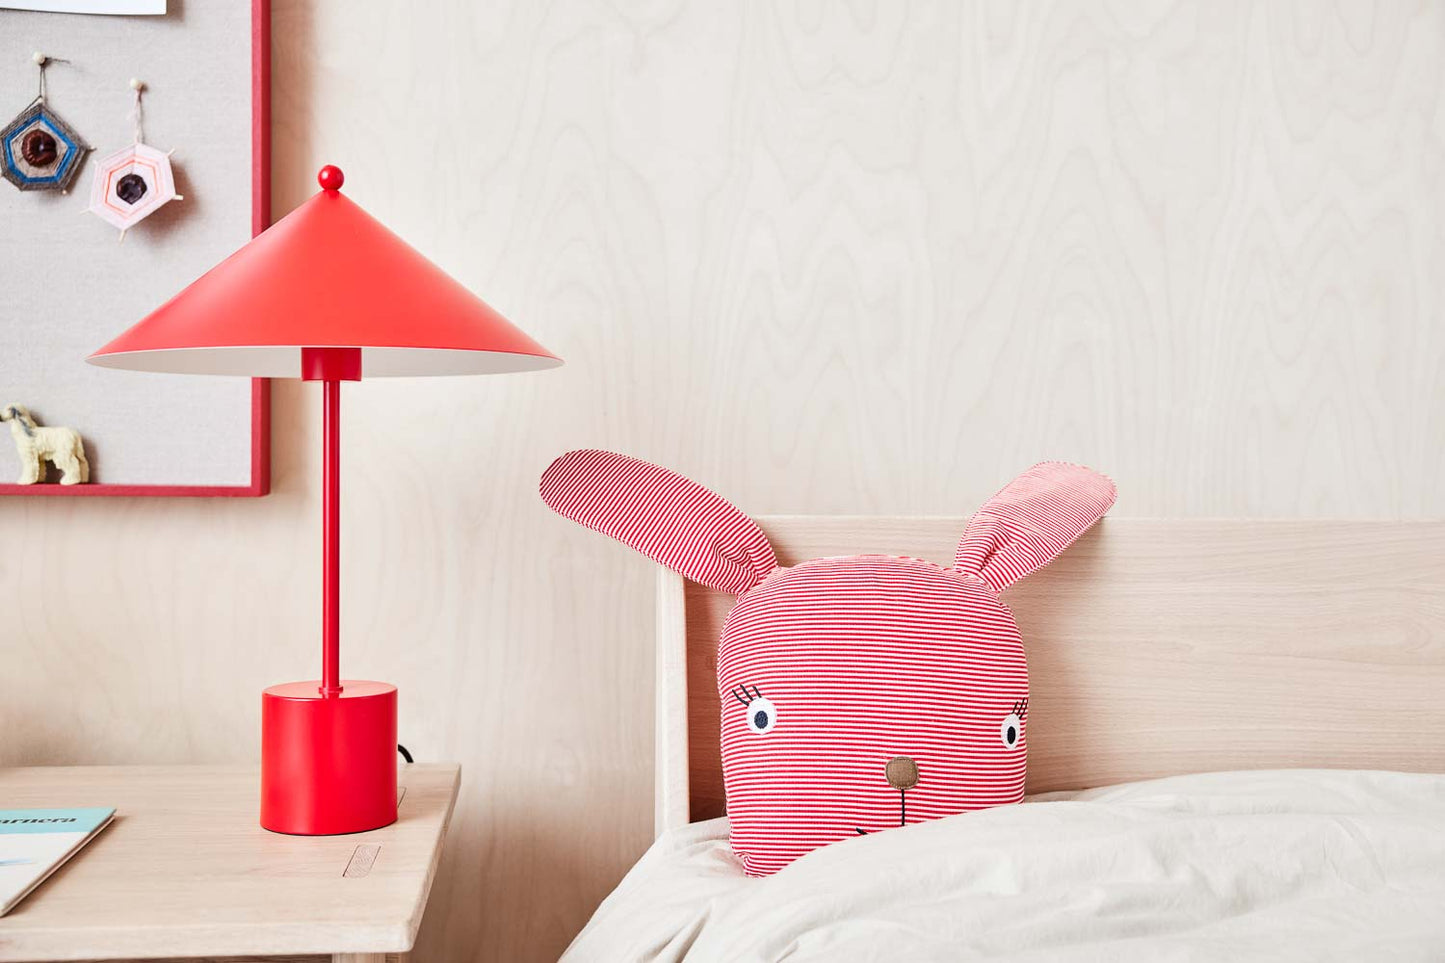 OYOY MINI Rosy Rabbit Denim Toy Soft Toys 405 Cherry Red